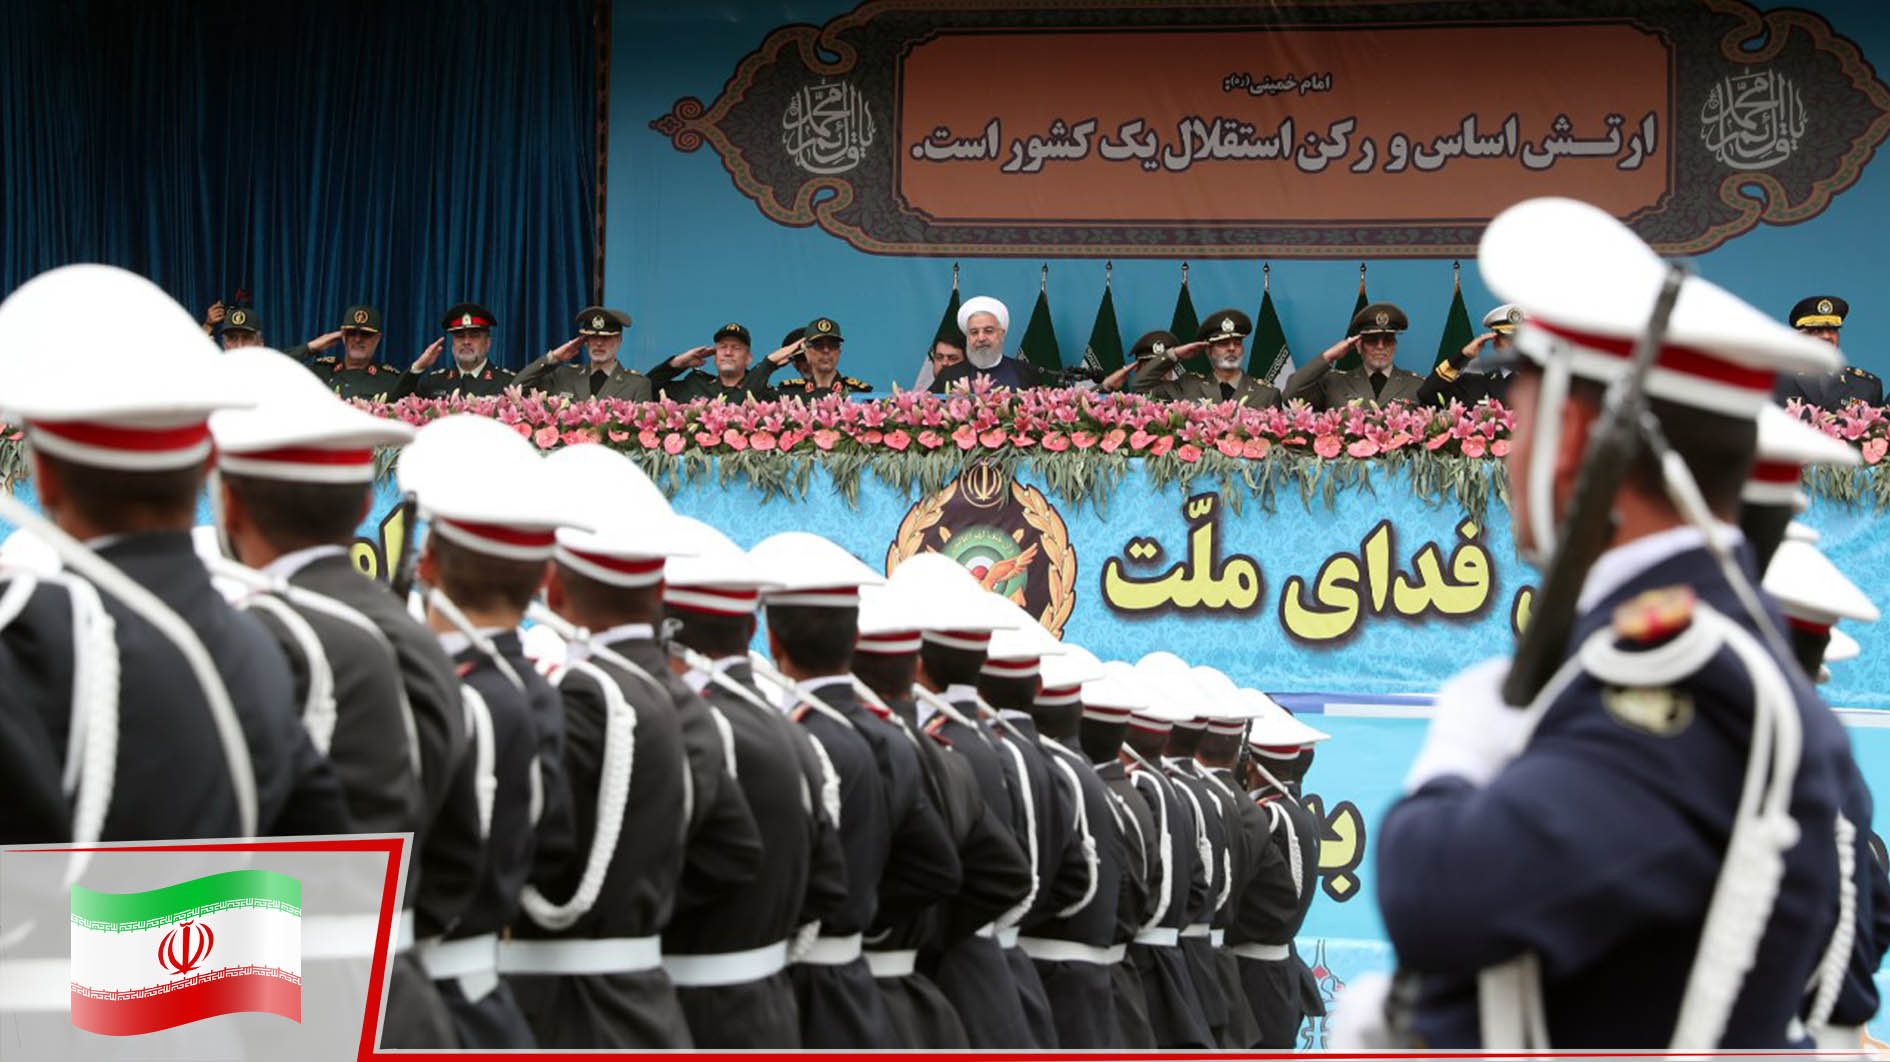 İran: "Savunma yapımız kırmızı çizgimizdir"